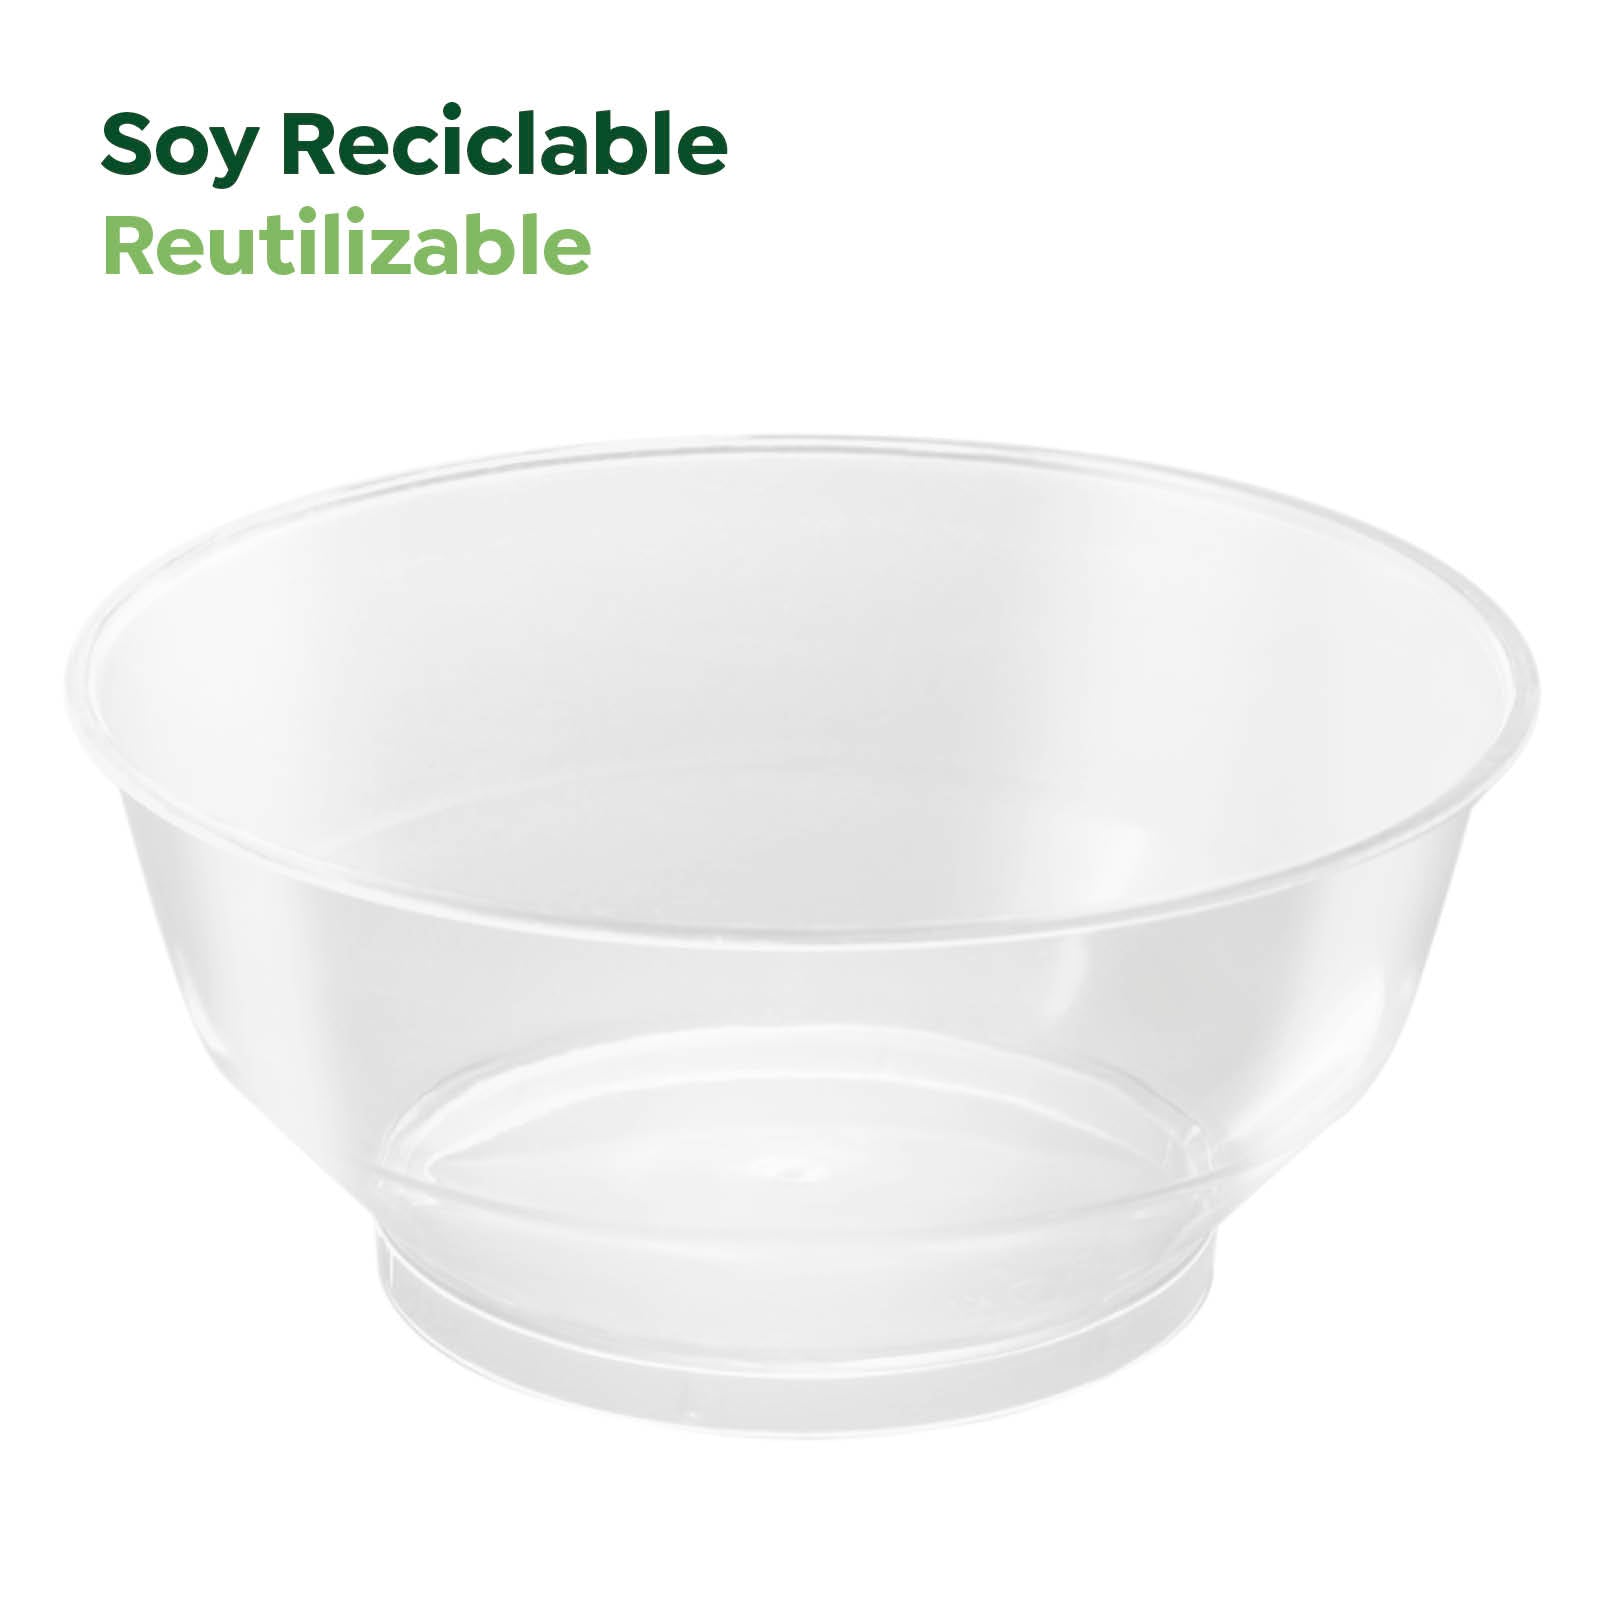 Bol Plástico Reciclable Redondo Grande Finger Food 210cc Transparente